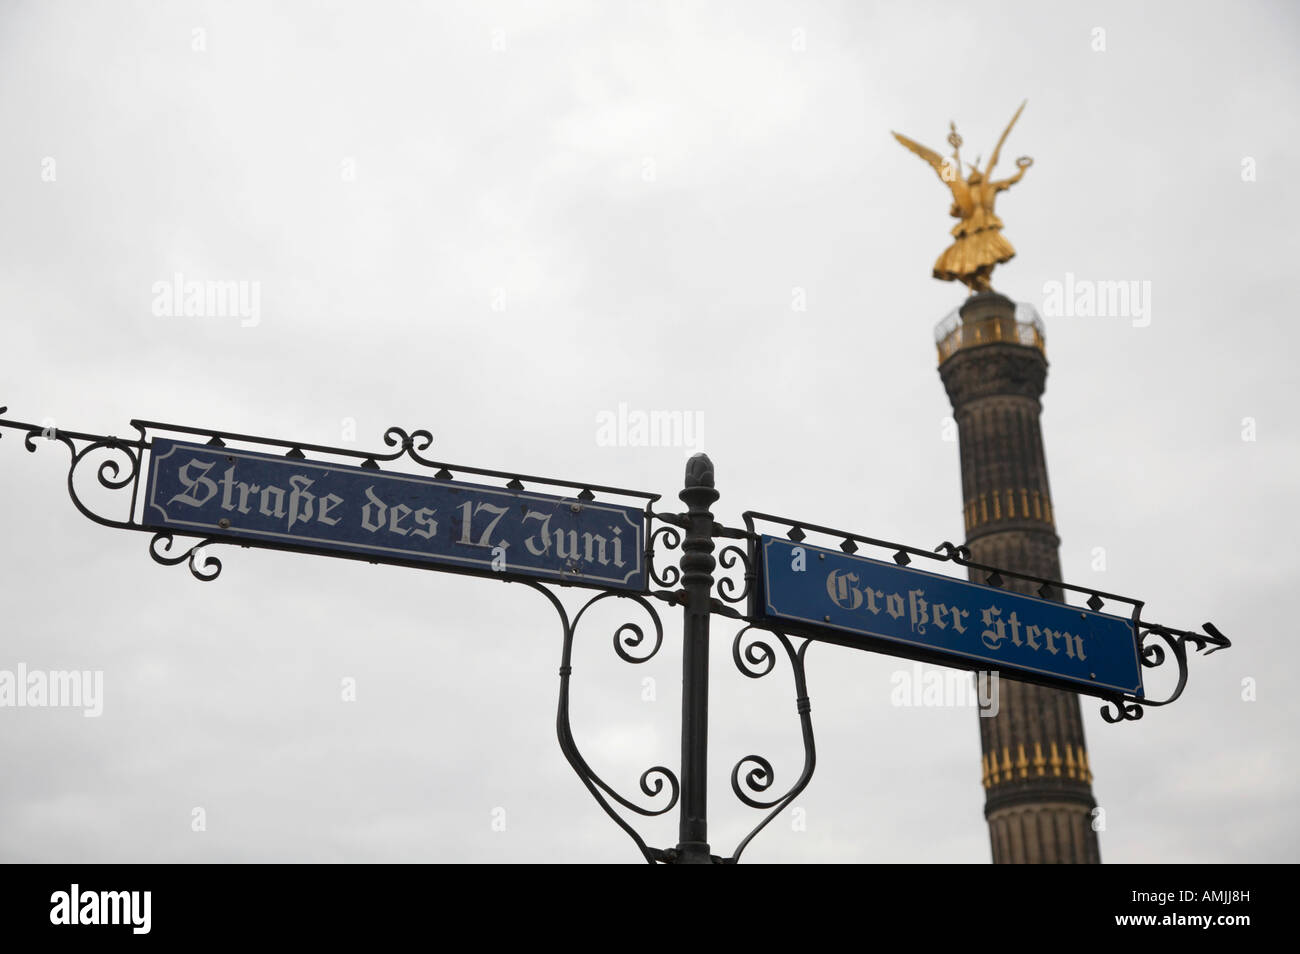 Berlin Colonna della Vittoria Siegessäule dietro cartelli per Strasse des 17 Juni e Grosser Stern Berlino Germania Foto Stock